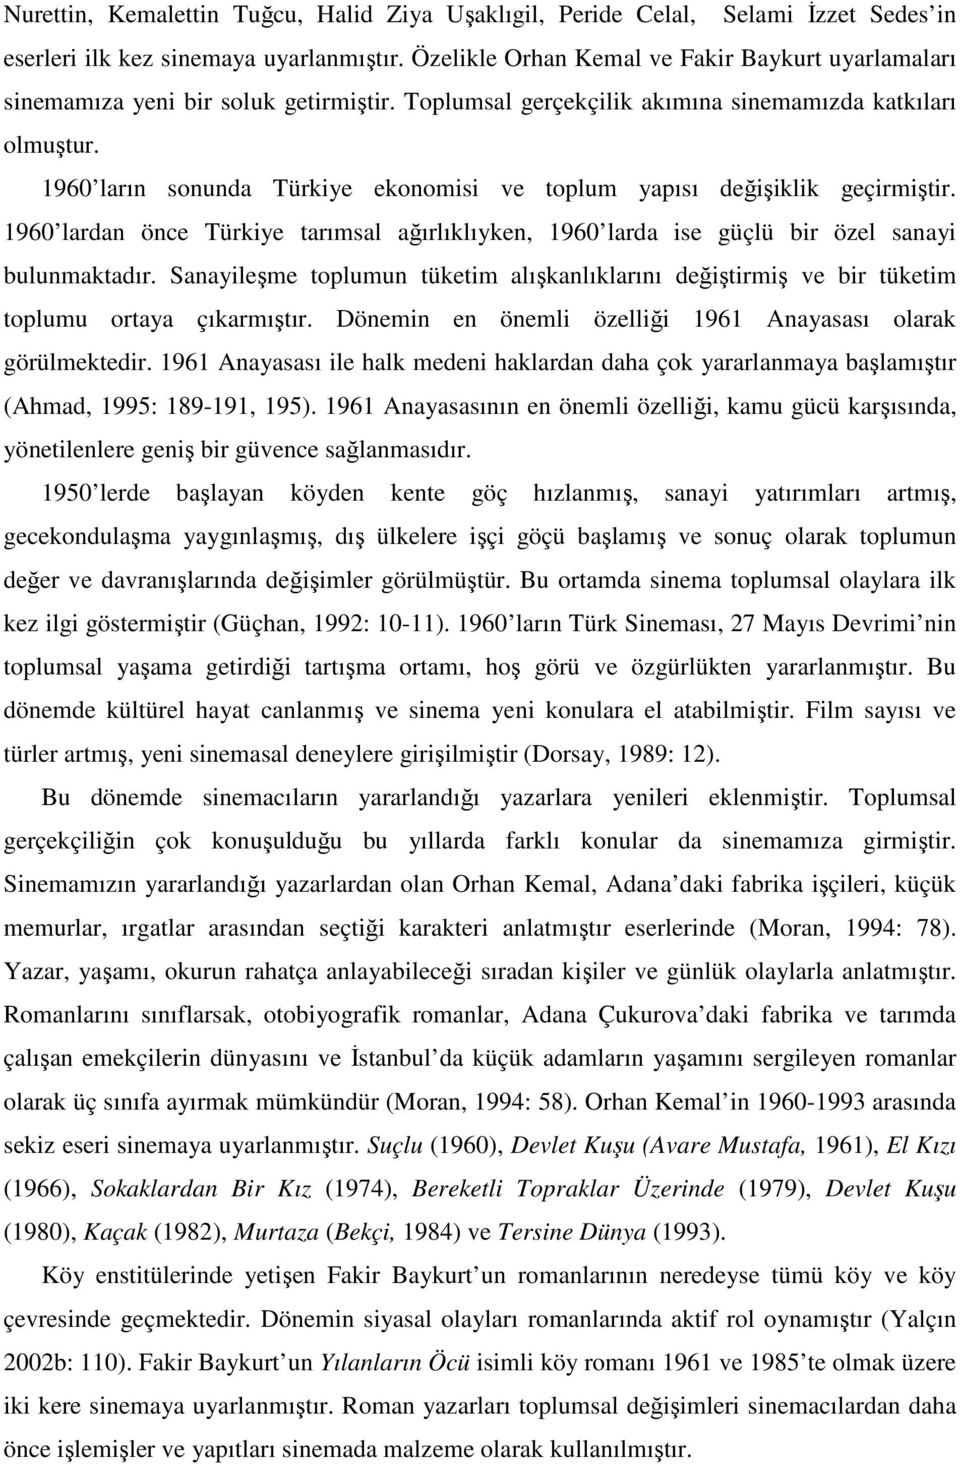 1960 ların sonunda Türkiye ekonomisi ve toplum yapısı değişiklik geçirmiştir. 1960 lardan önce Türkiye tarımsal ağırlıklıyken, 1960 larda ise güçlü bir özel sanayi bulunmaktadır.